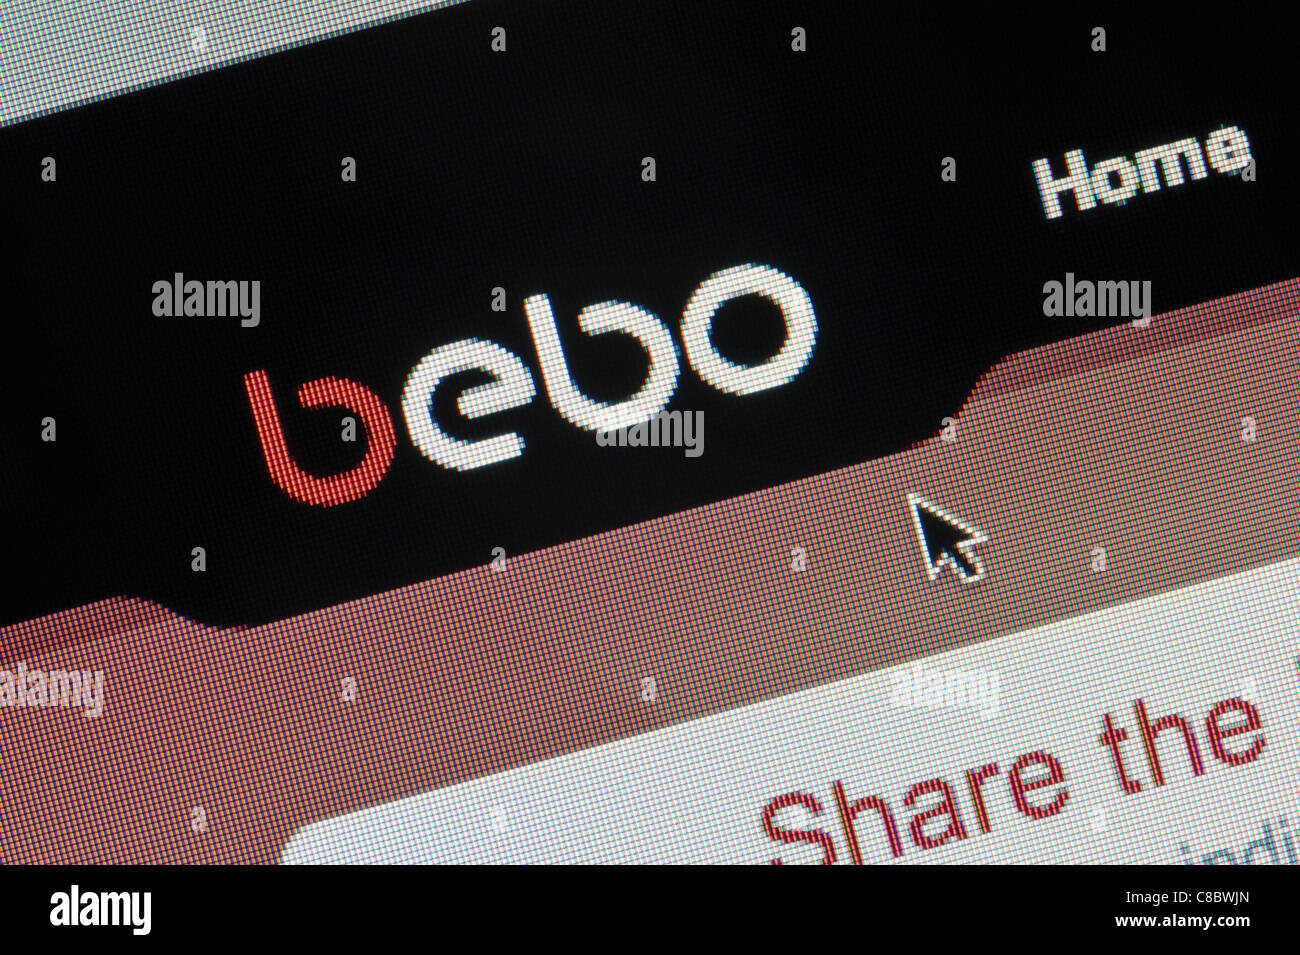 Nahaufnahme von Bebo-Logo auf ihrer Website gesehen. (Nur zur redaktionellen Verwendung: print, TV, e-Book und redaktionelle Webseite). Stockfoto